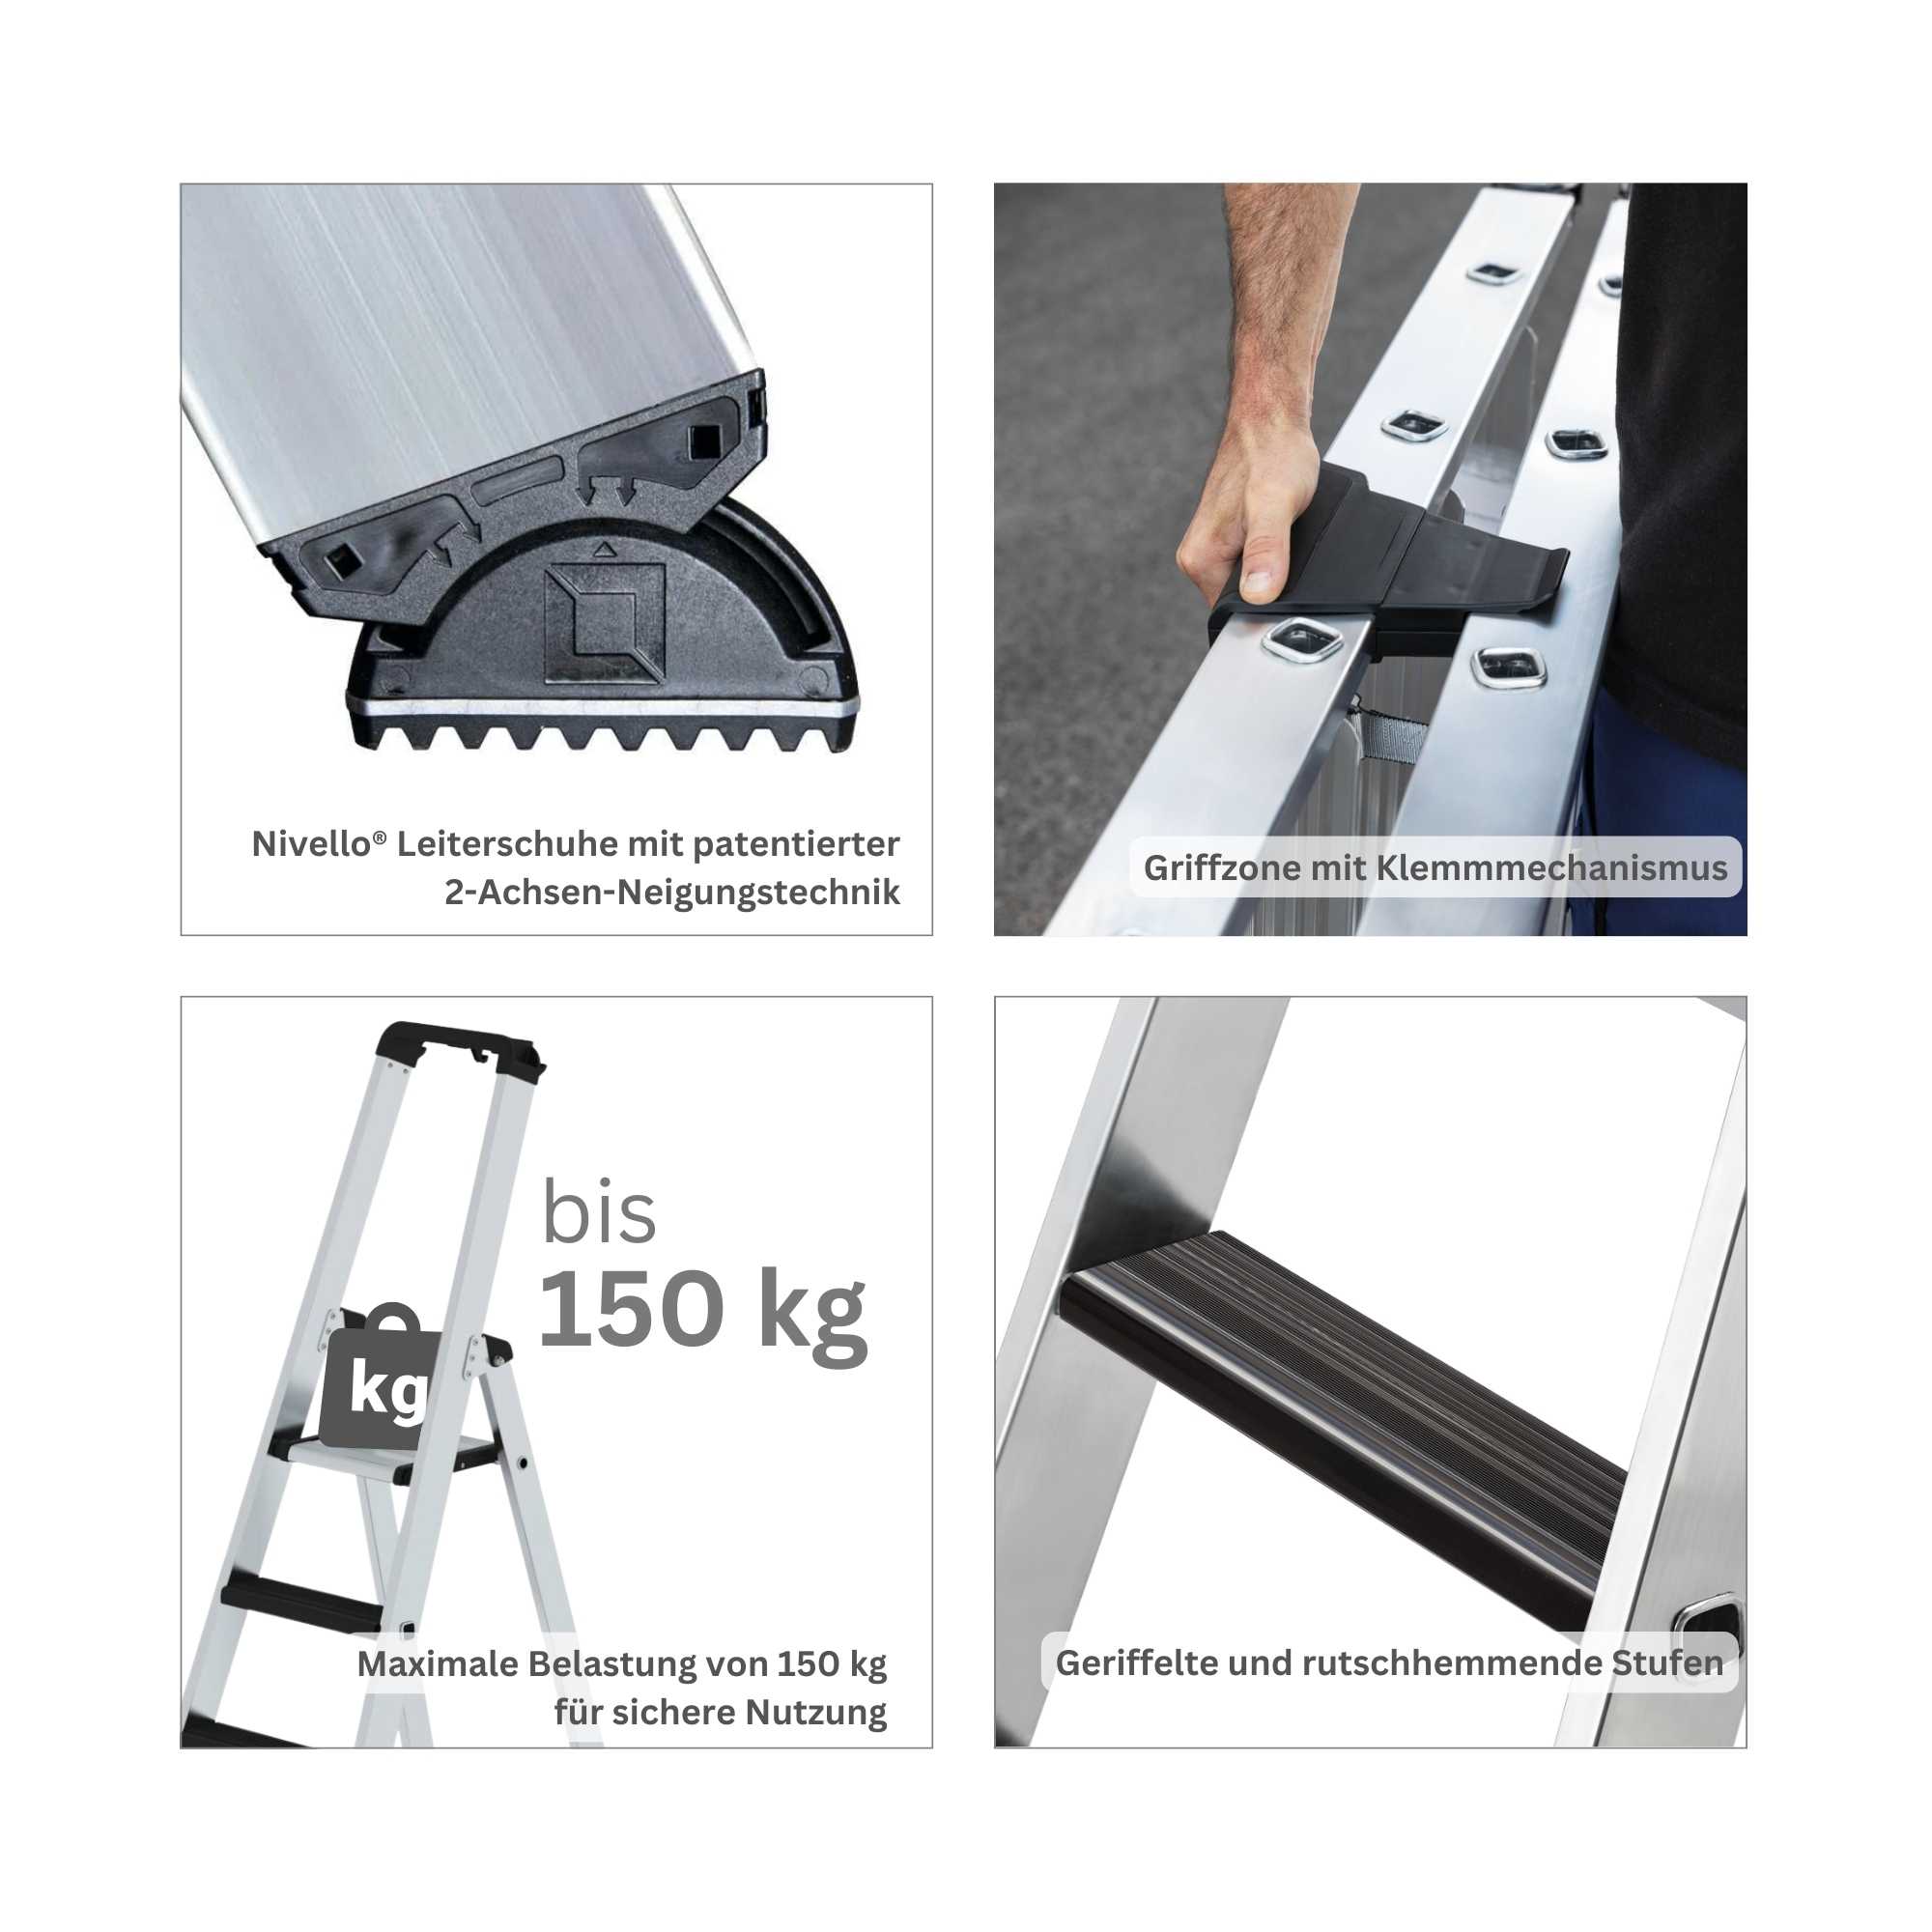 Stufen-Stehleiter einseitig begehbar mit clip-step relax 5 Stufen